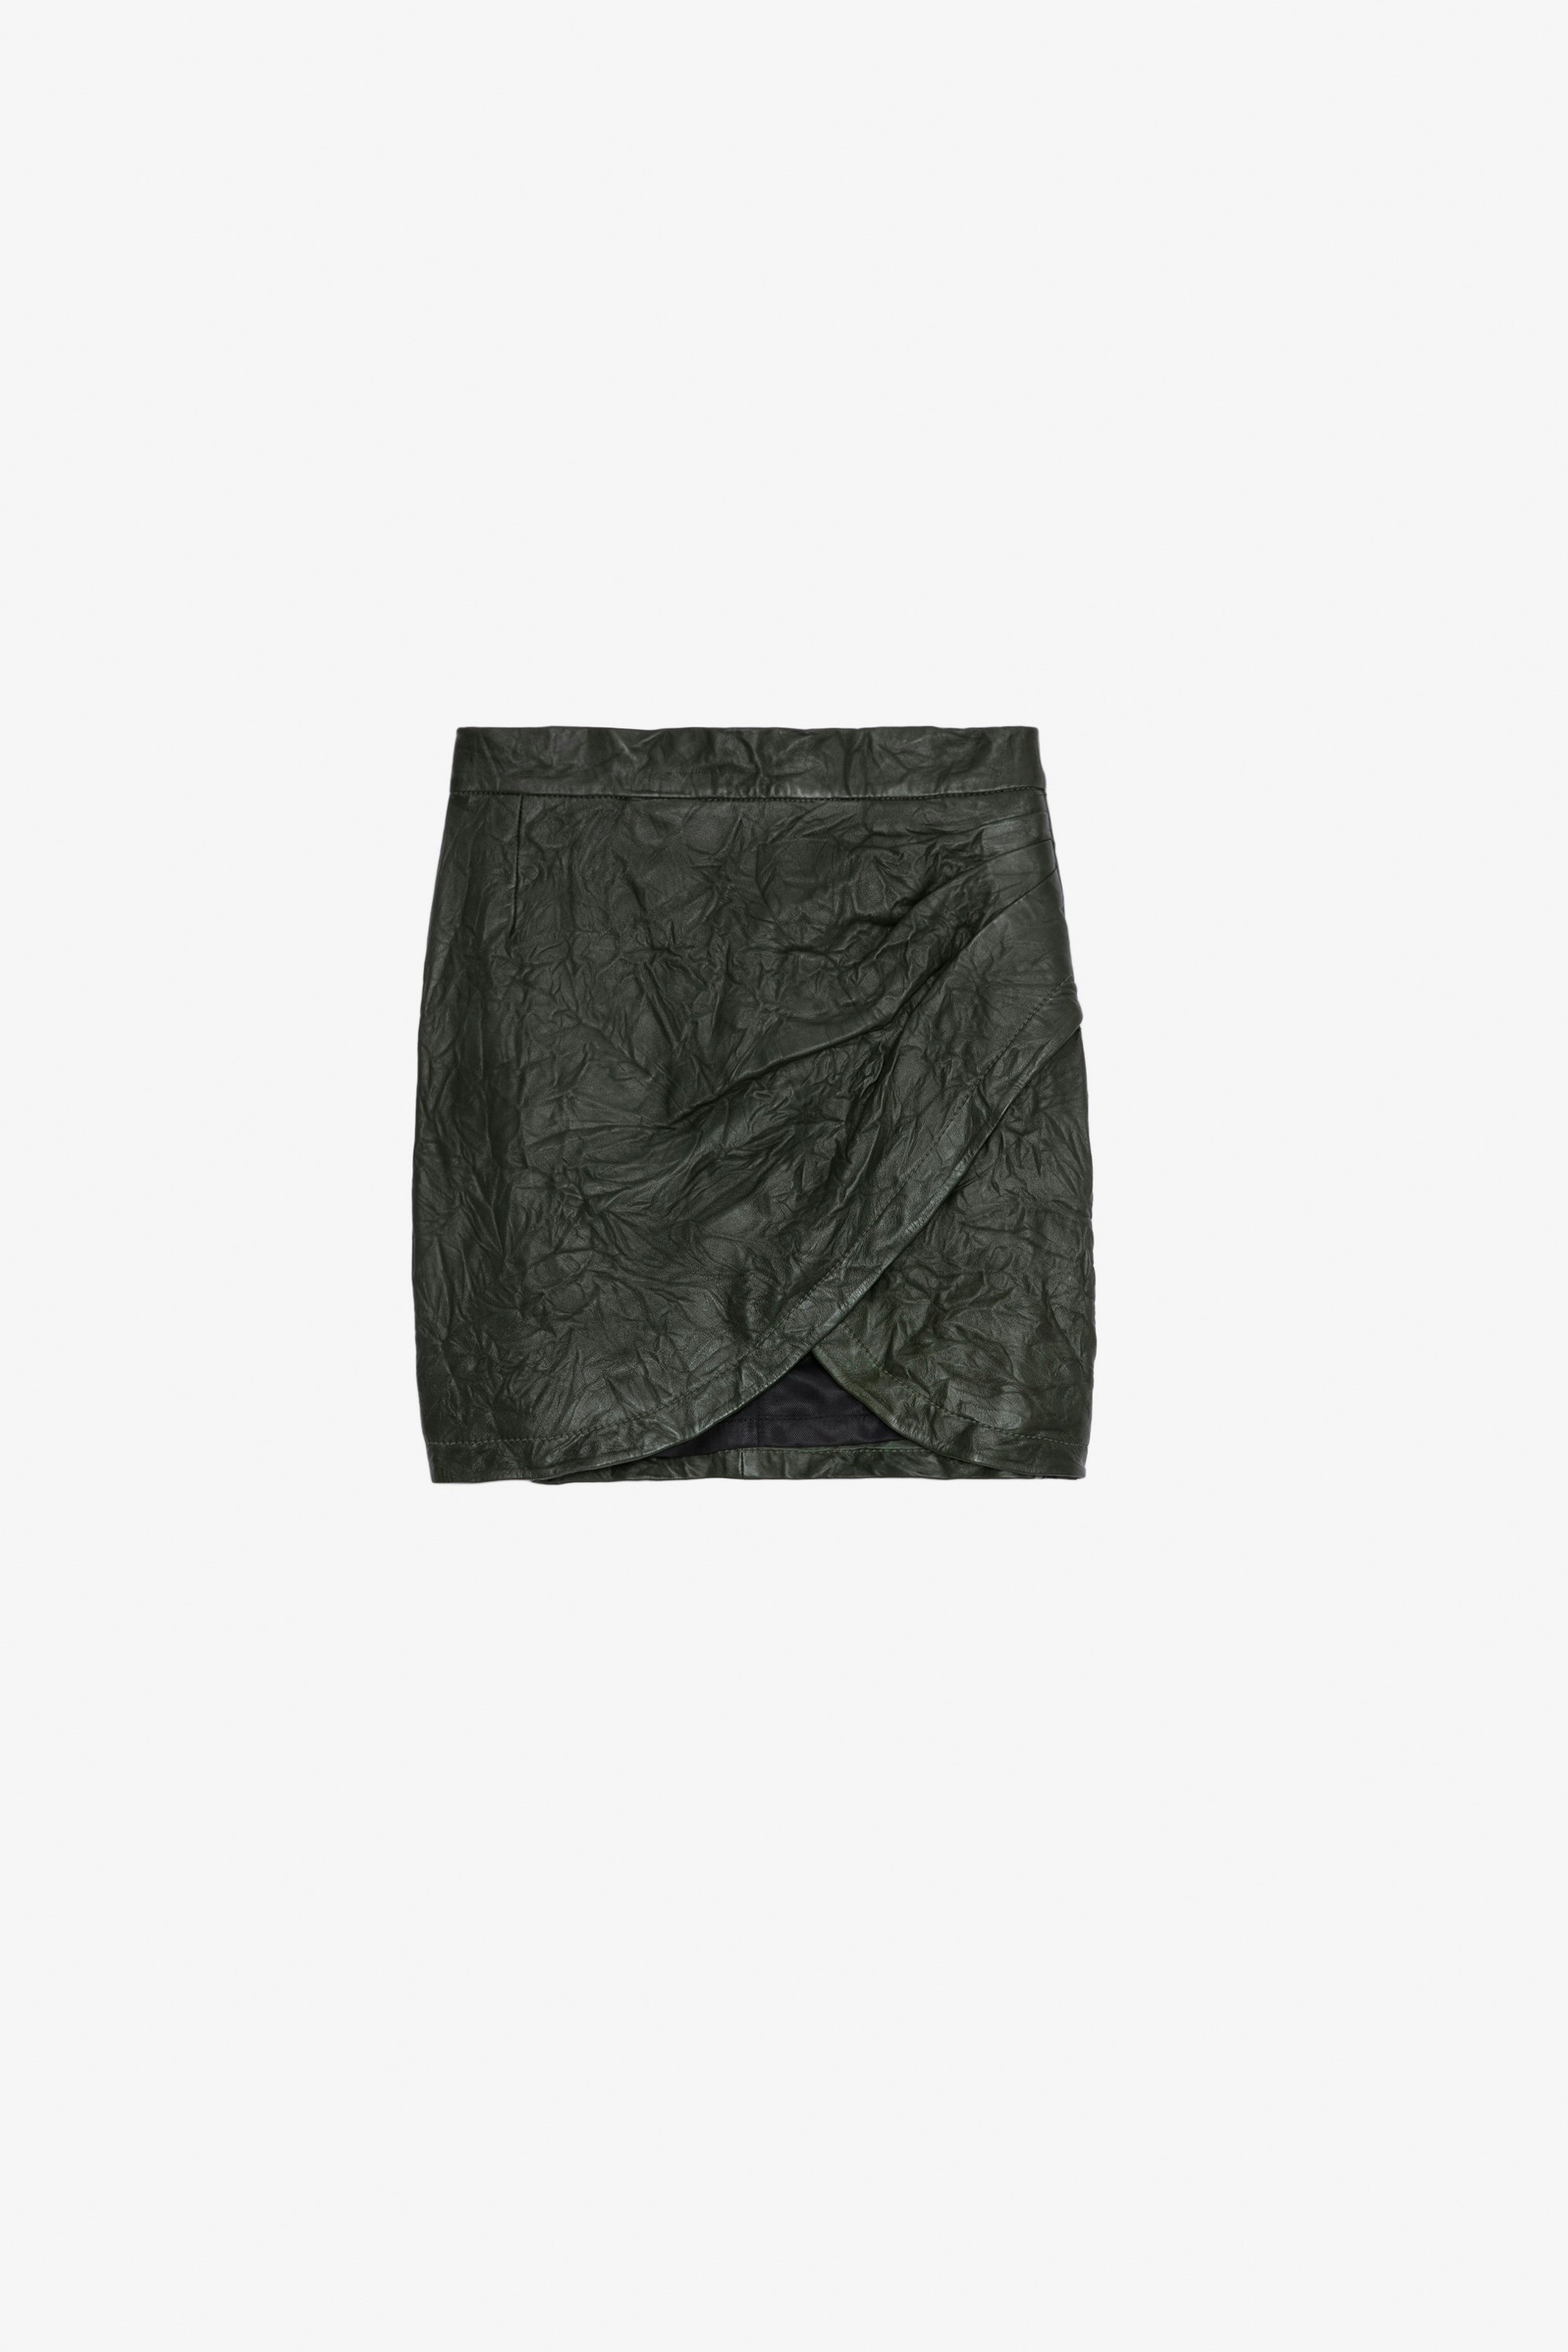 Julipe Crinkled Leather Skirt - Short curved-hem khaki crinkled leather skirt.